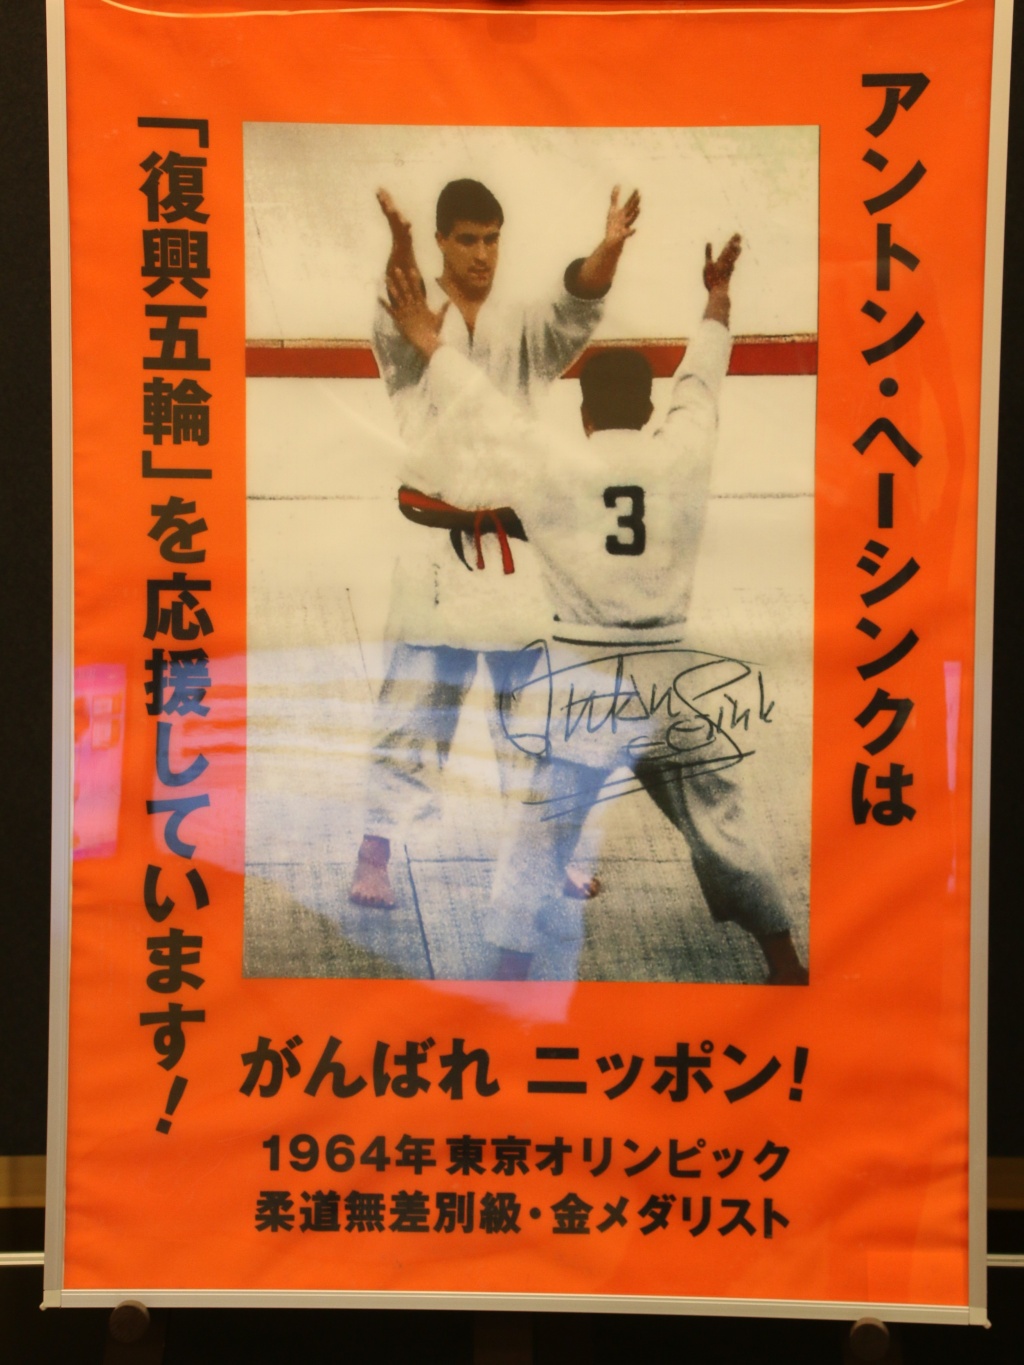 1964年東京五輪の柔道決勝で神永昭夫選手と対戦するヘーシンク氏。往時を偲ばせる